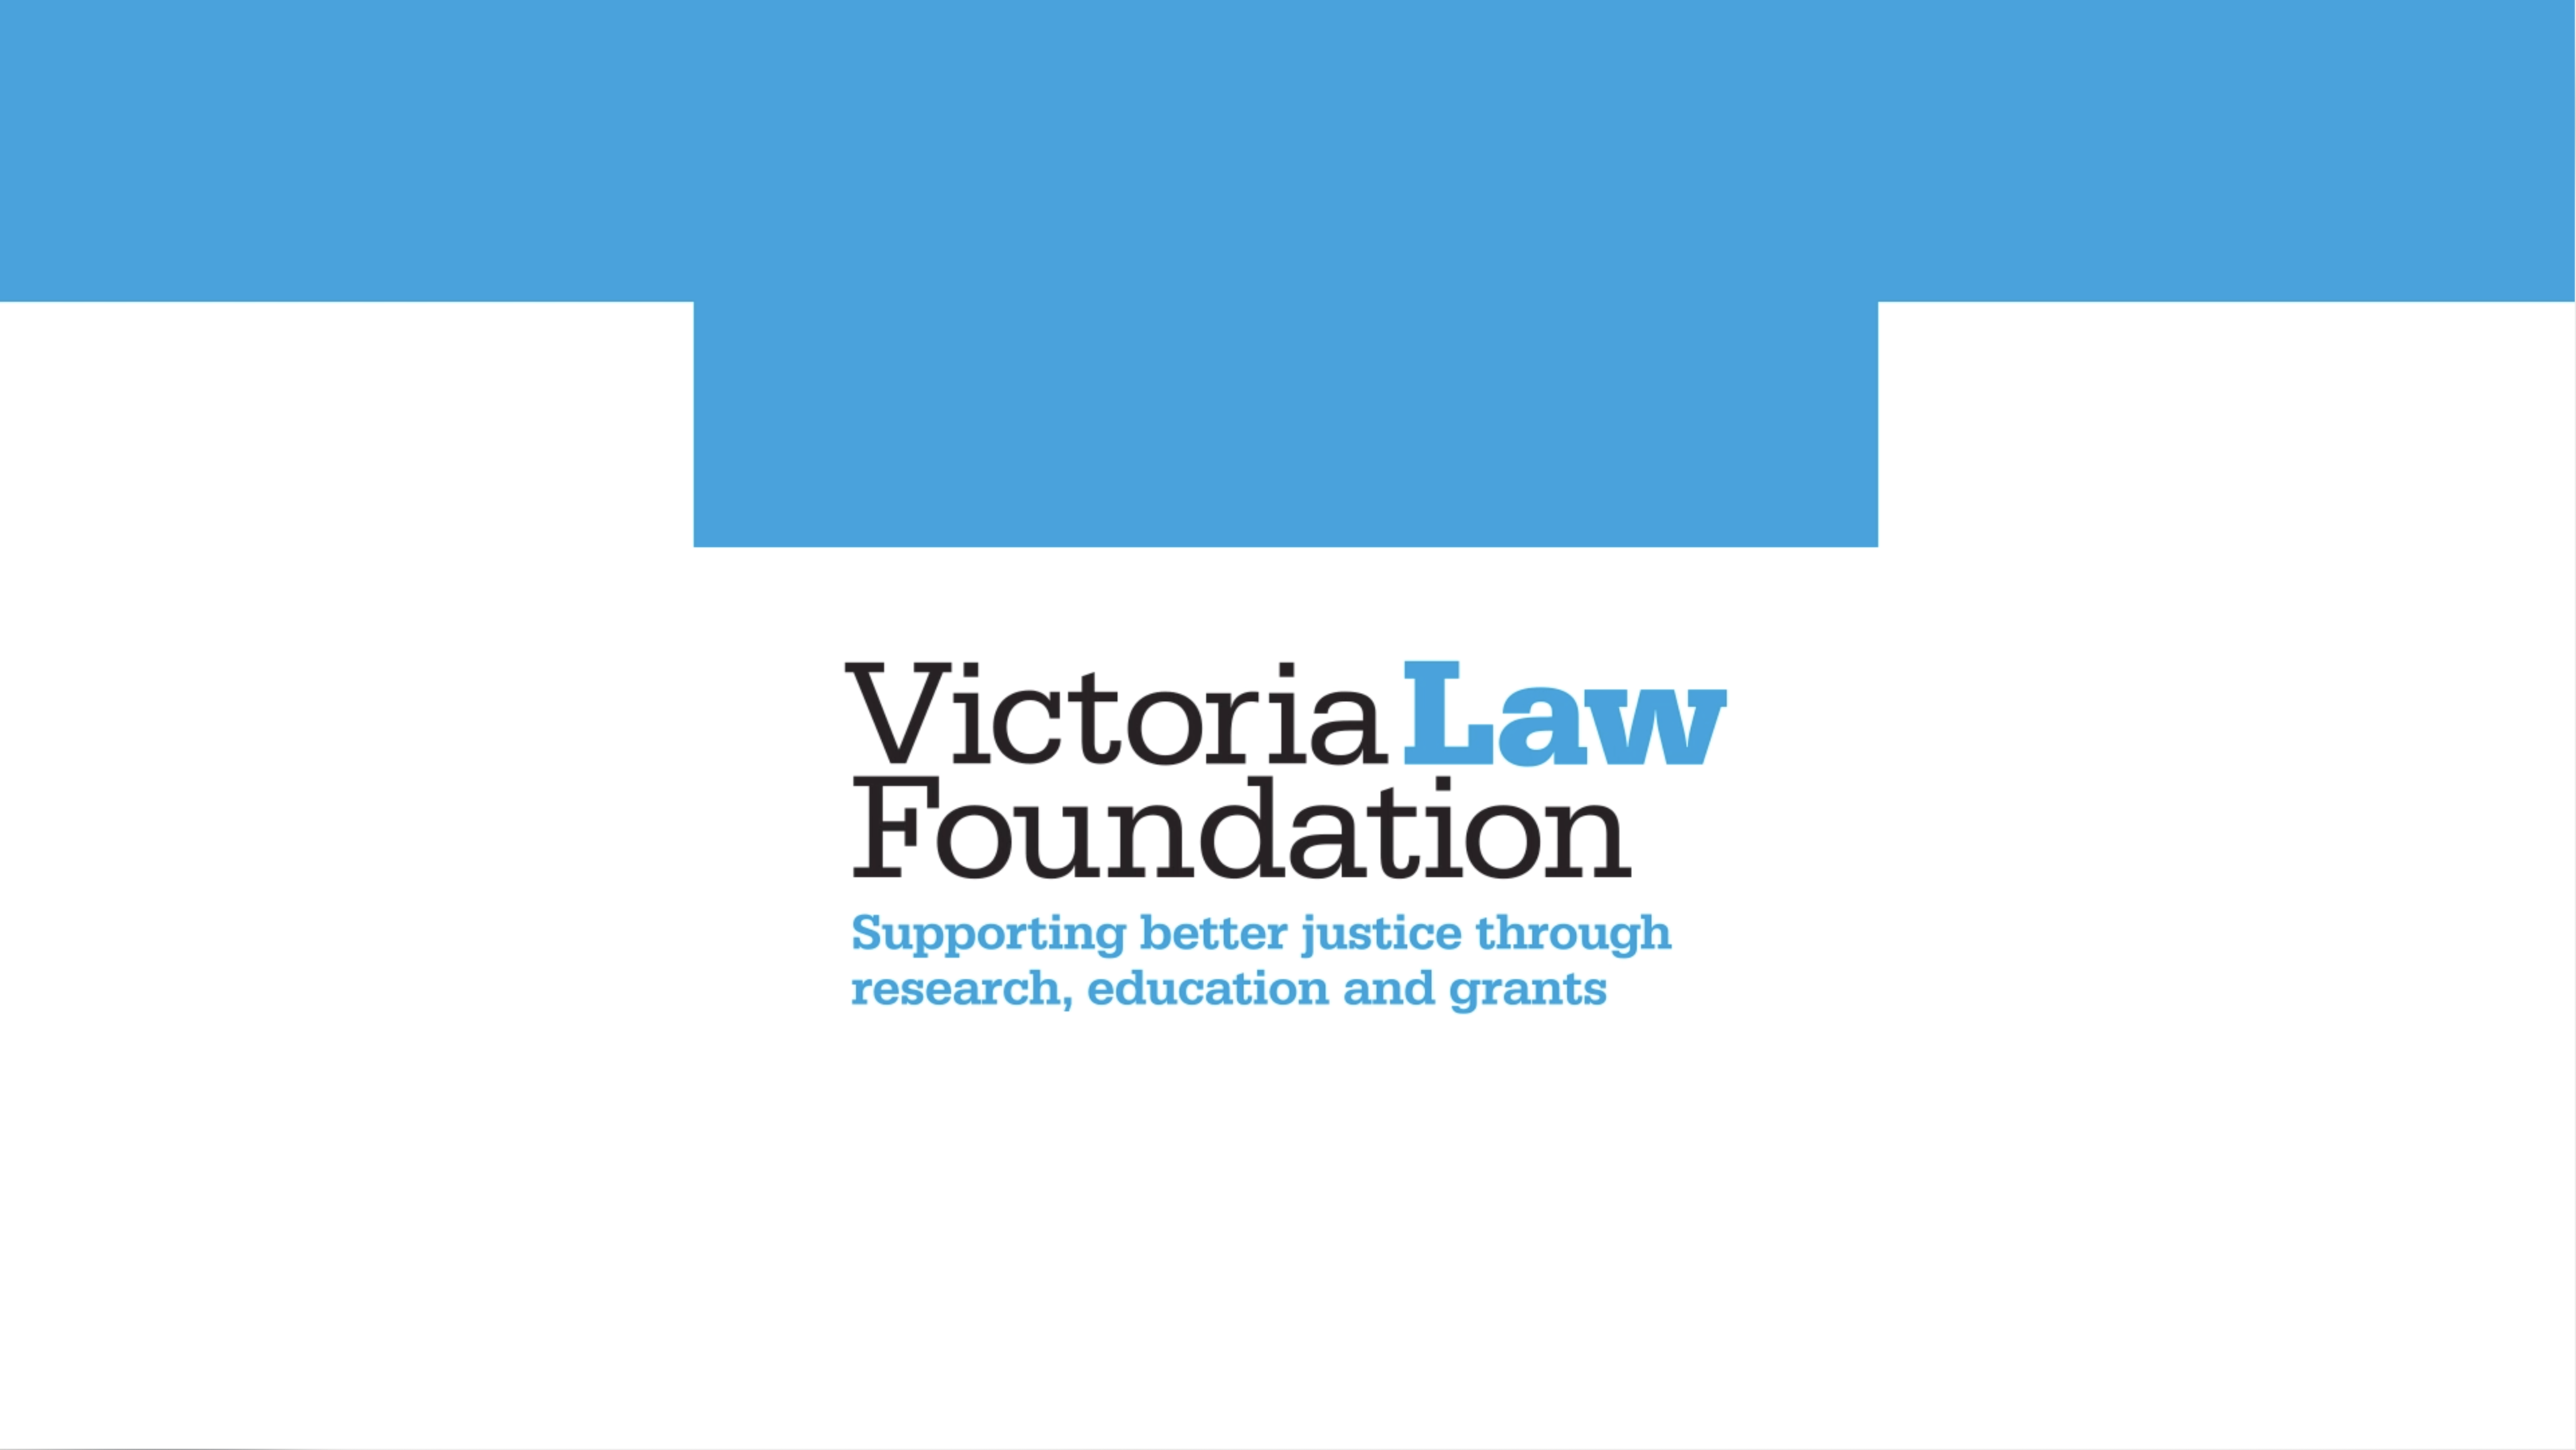 Victoria Law Foundation brand lockup logo design